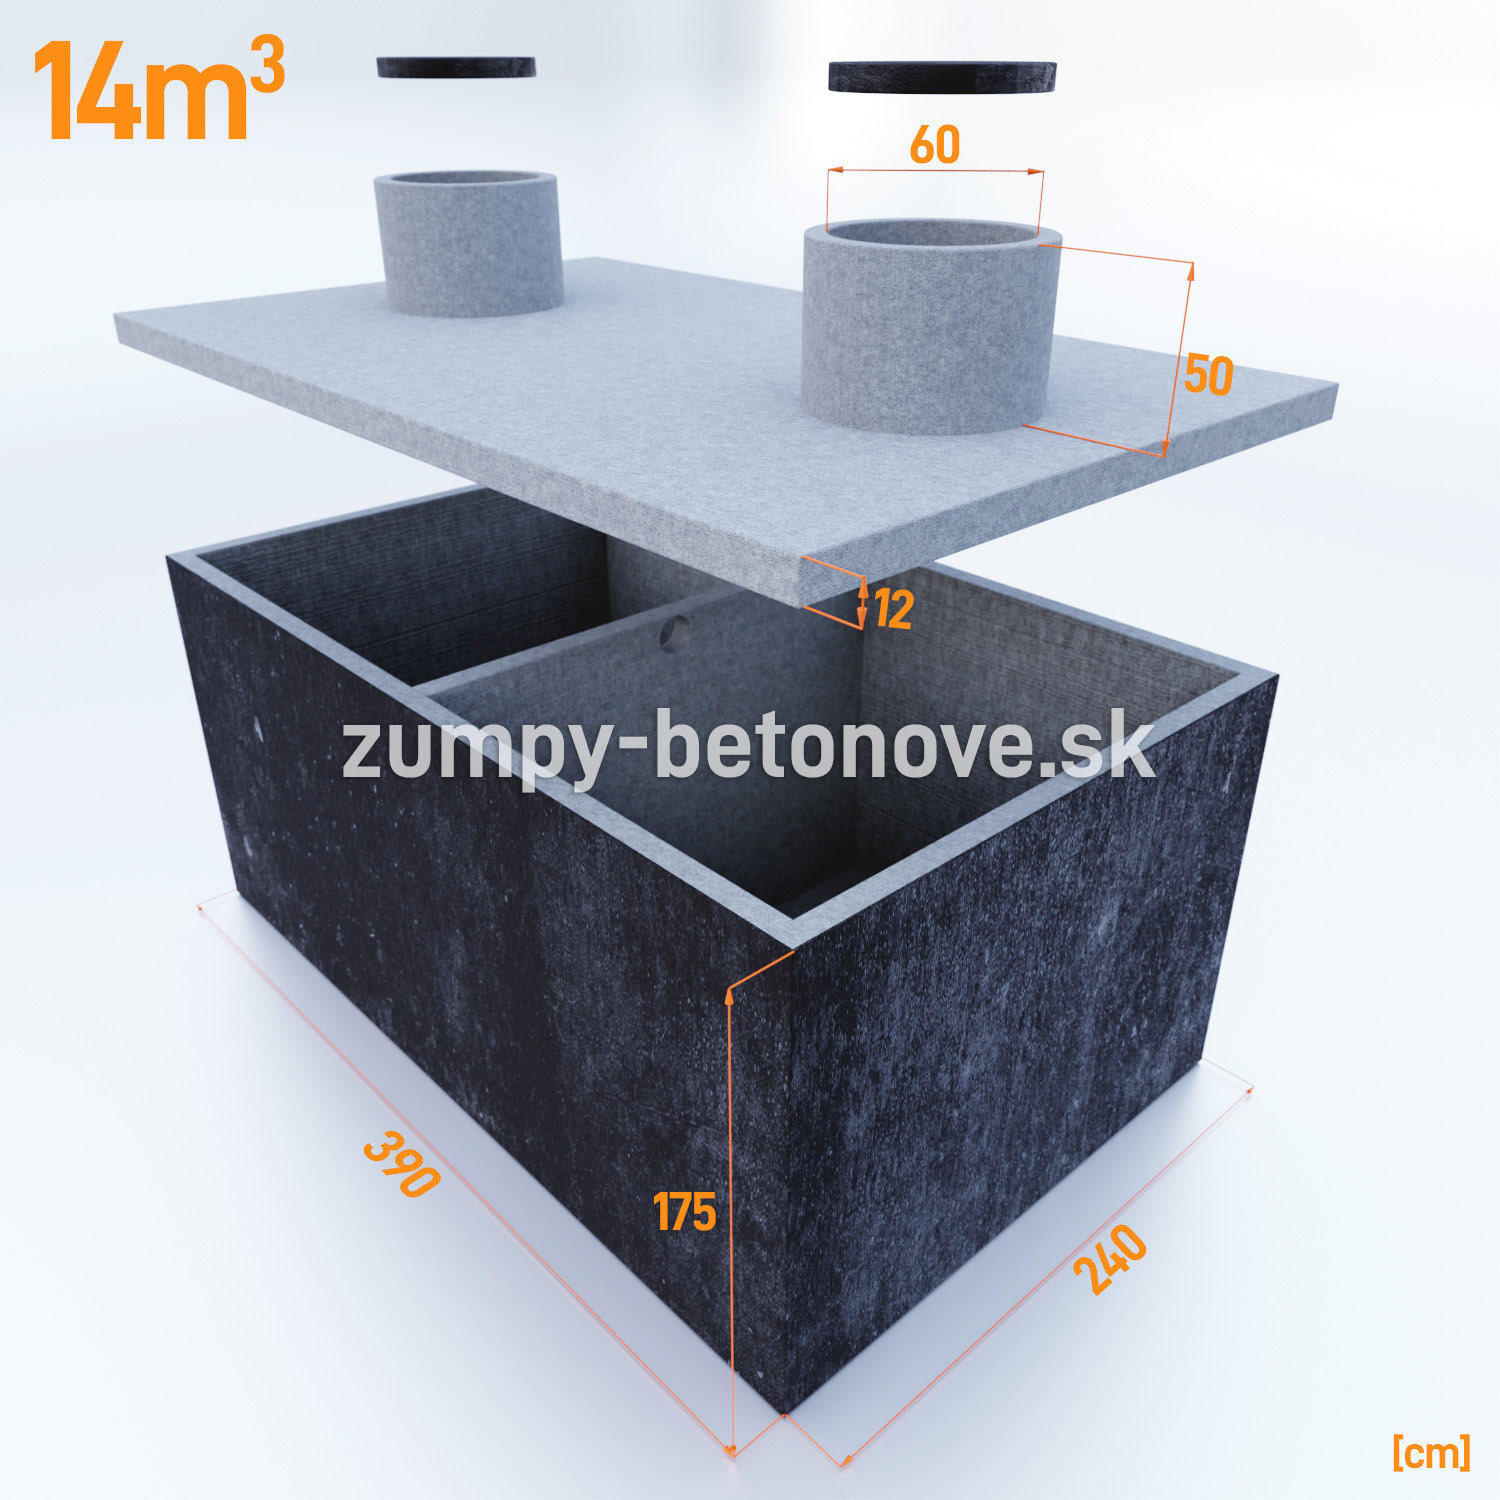 dvojkomorova-betonova-nadrz-14-m3